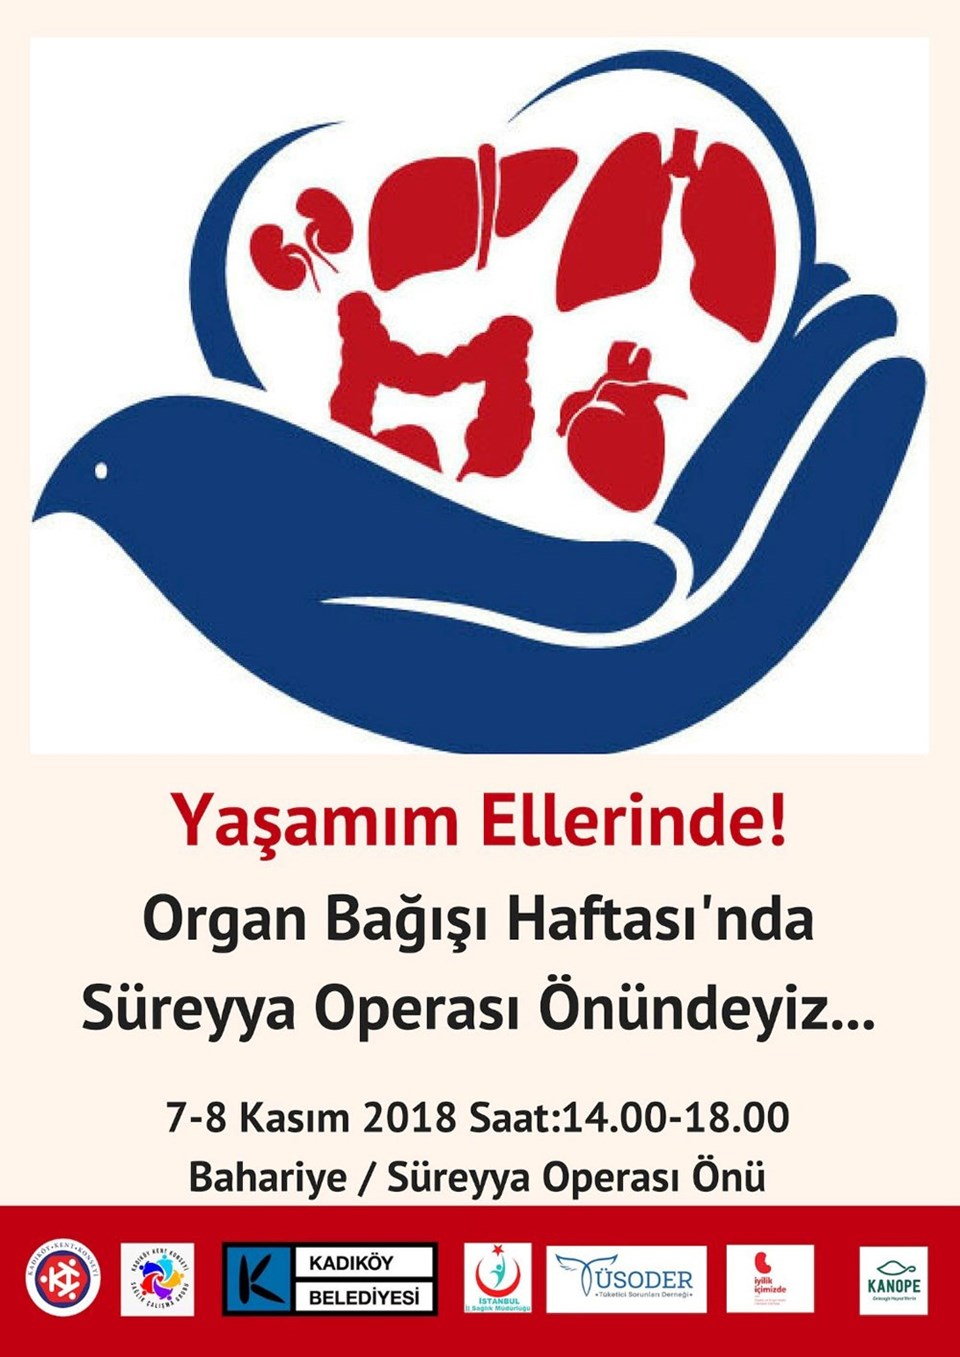 Organ Bağışı Haftası’nda “Yaşamım Ellerinde!” diyorlar - 1